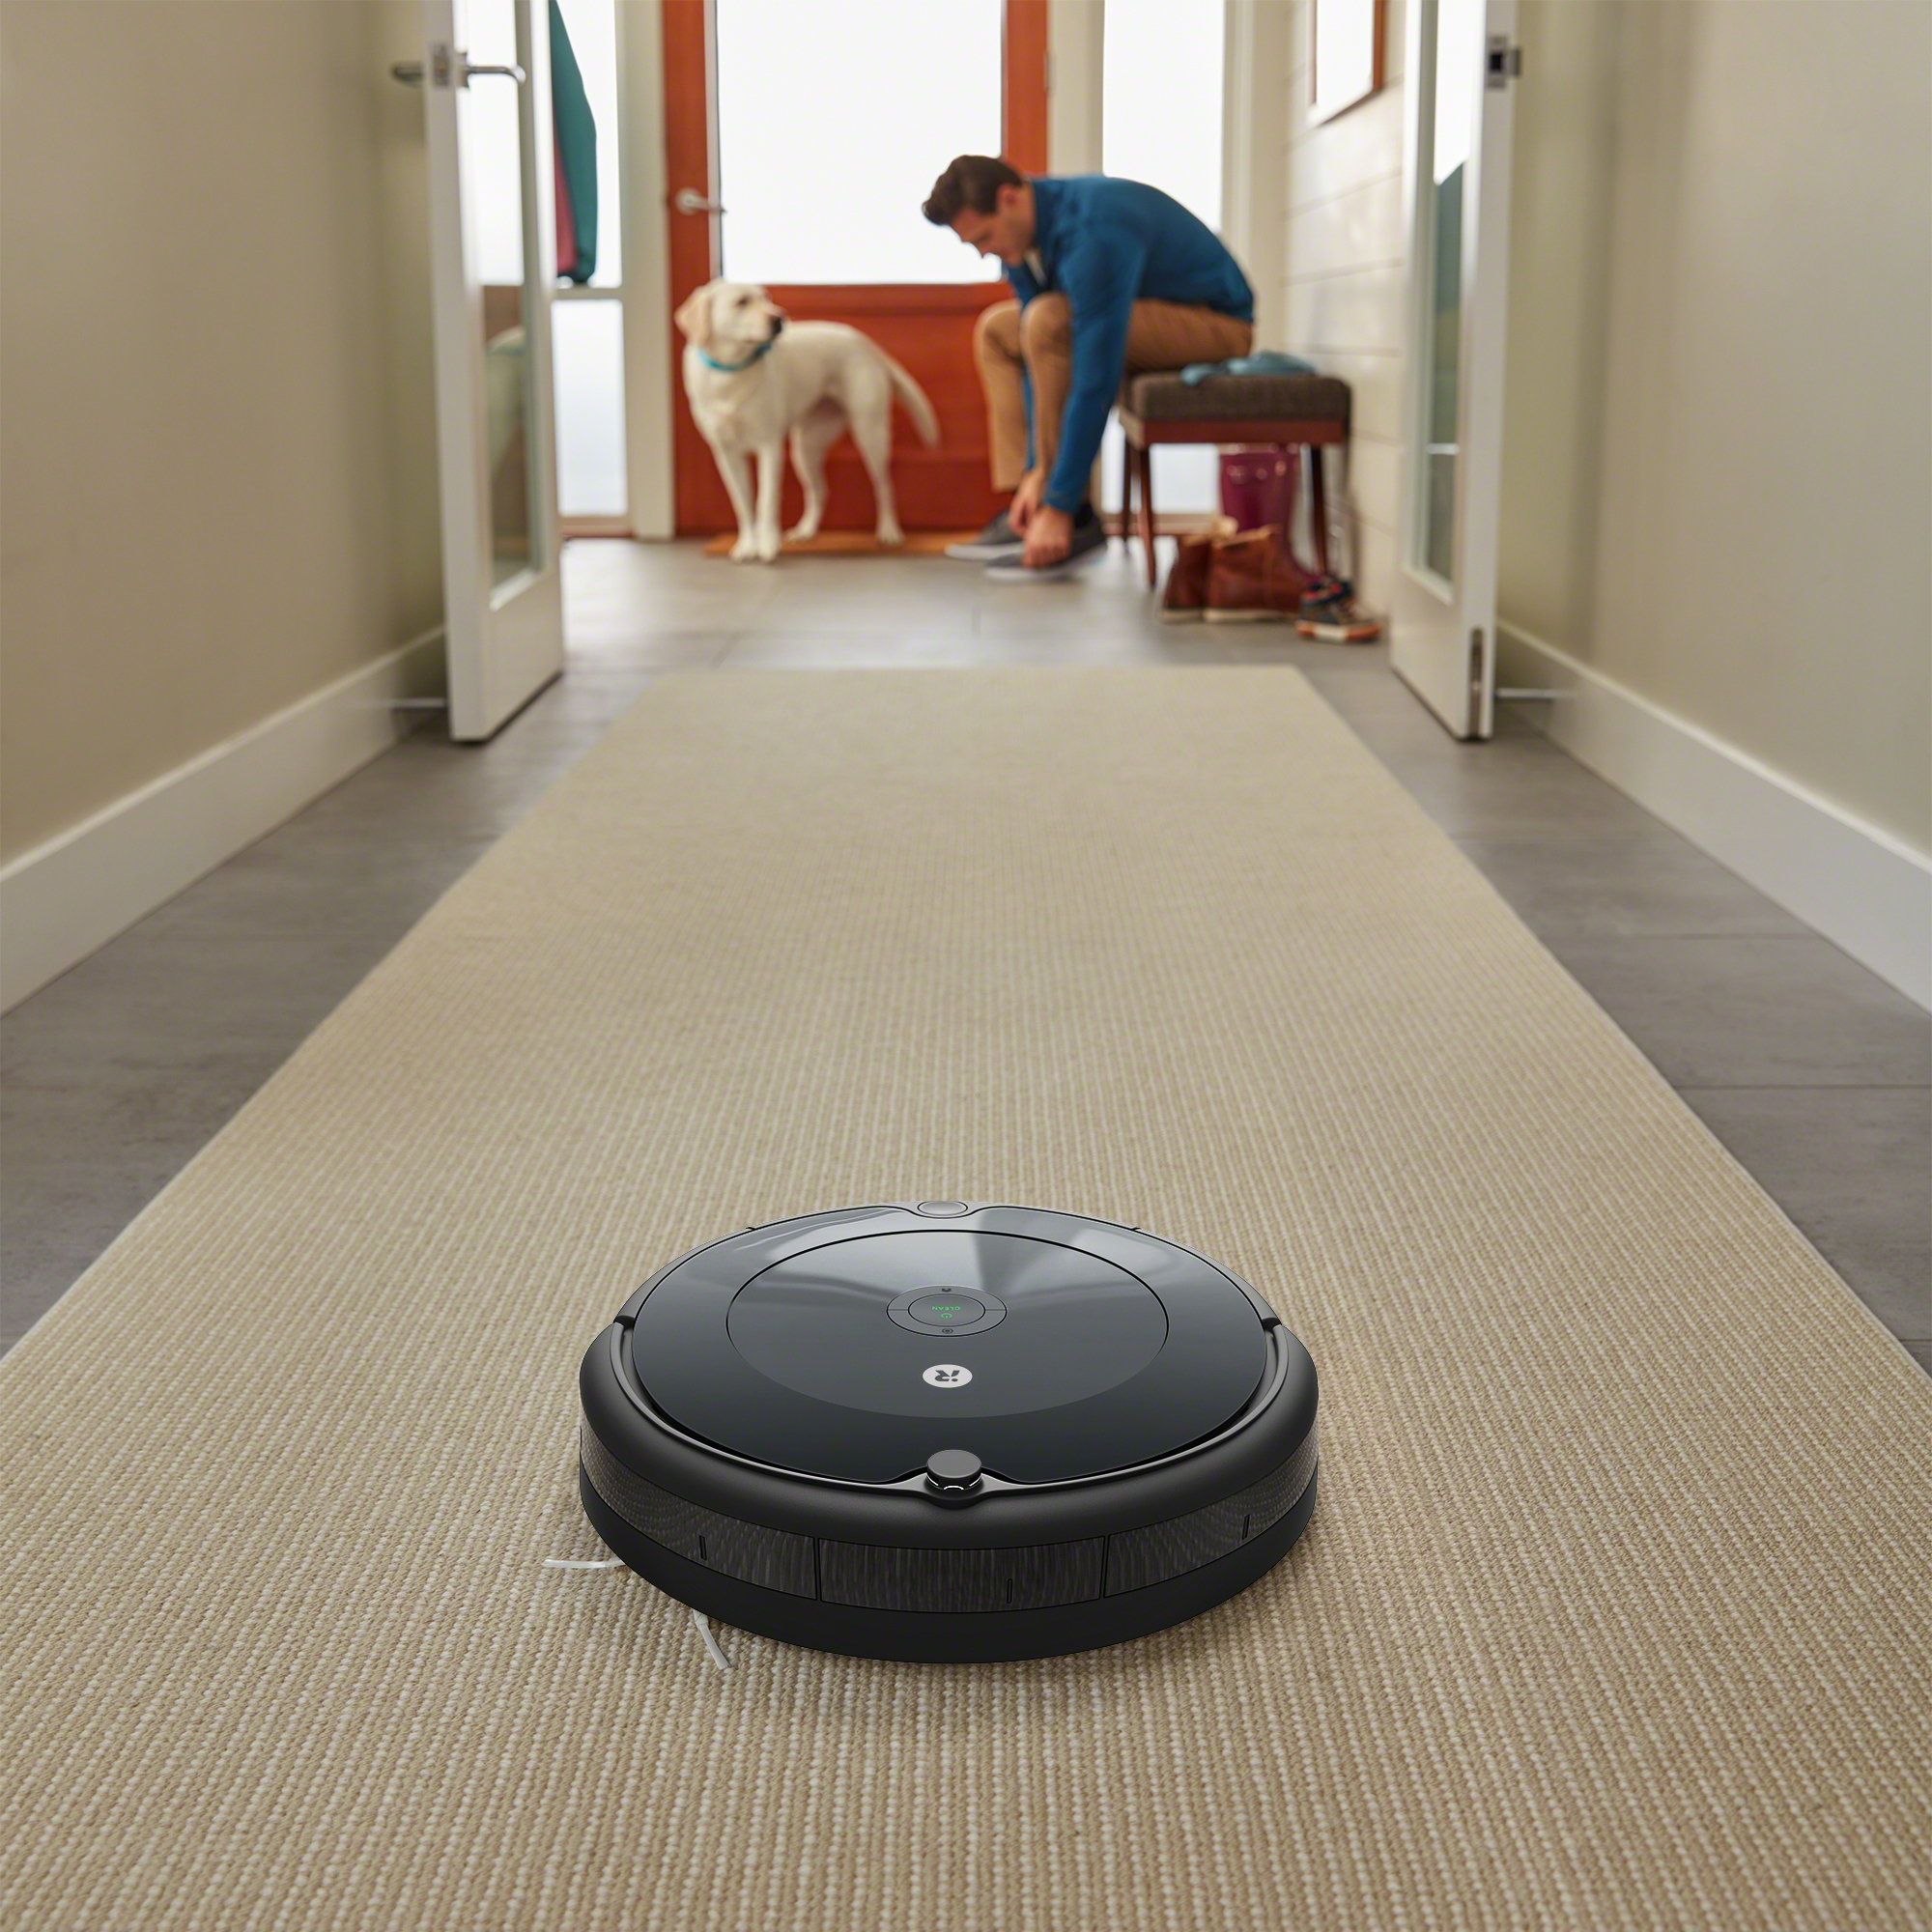 Roomba robot aspirador irobot, robot, electrónica, aspiradora png